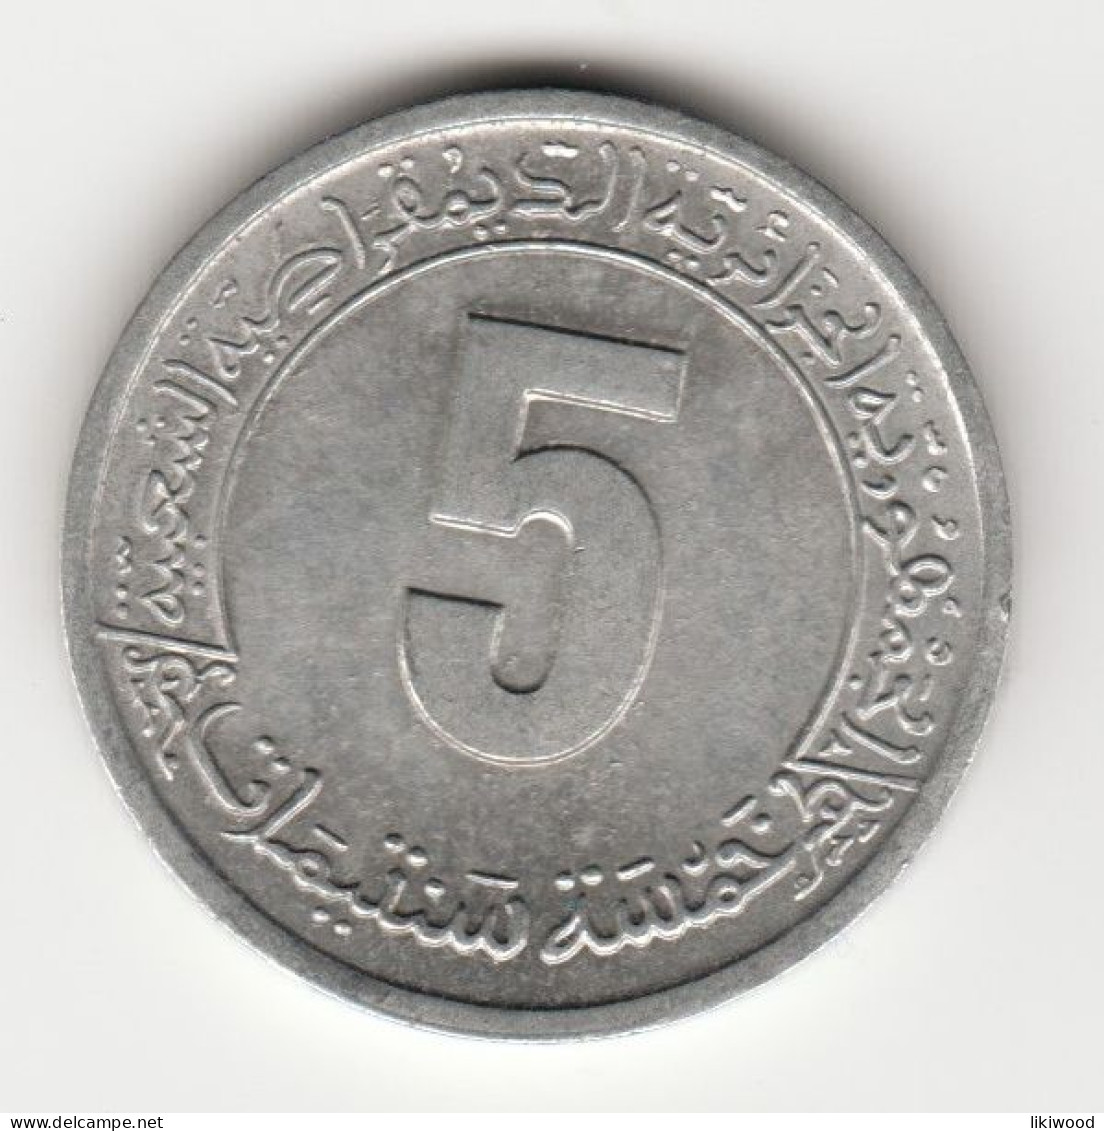 5 Centimes (FAO) - 1974 - Algeria - Algeria